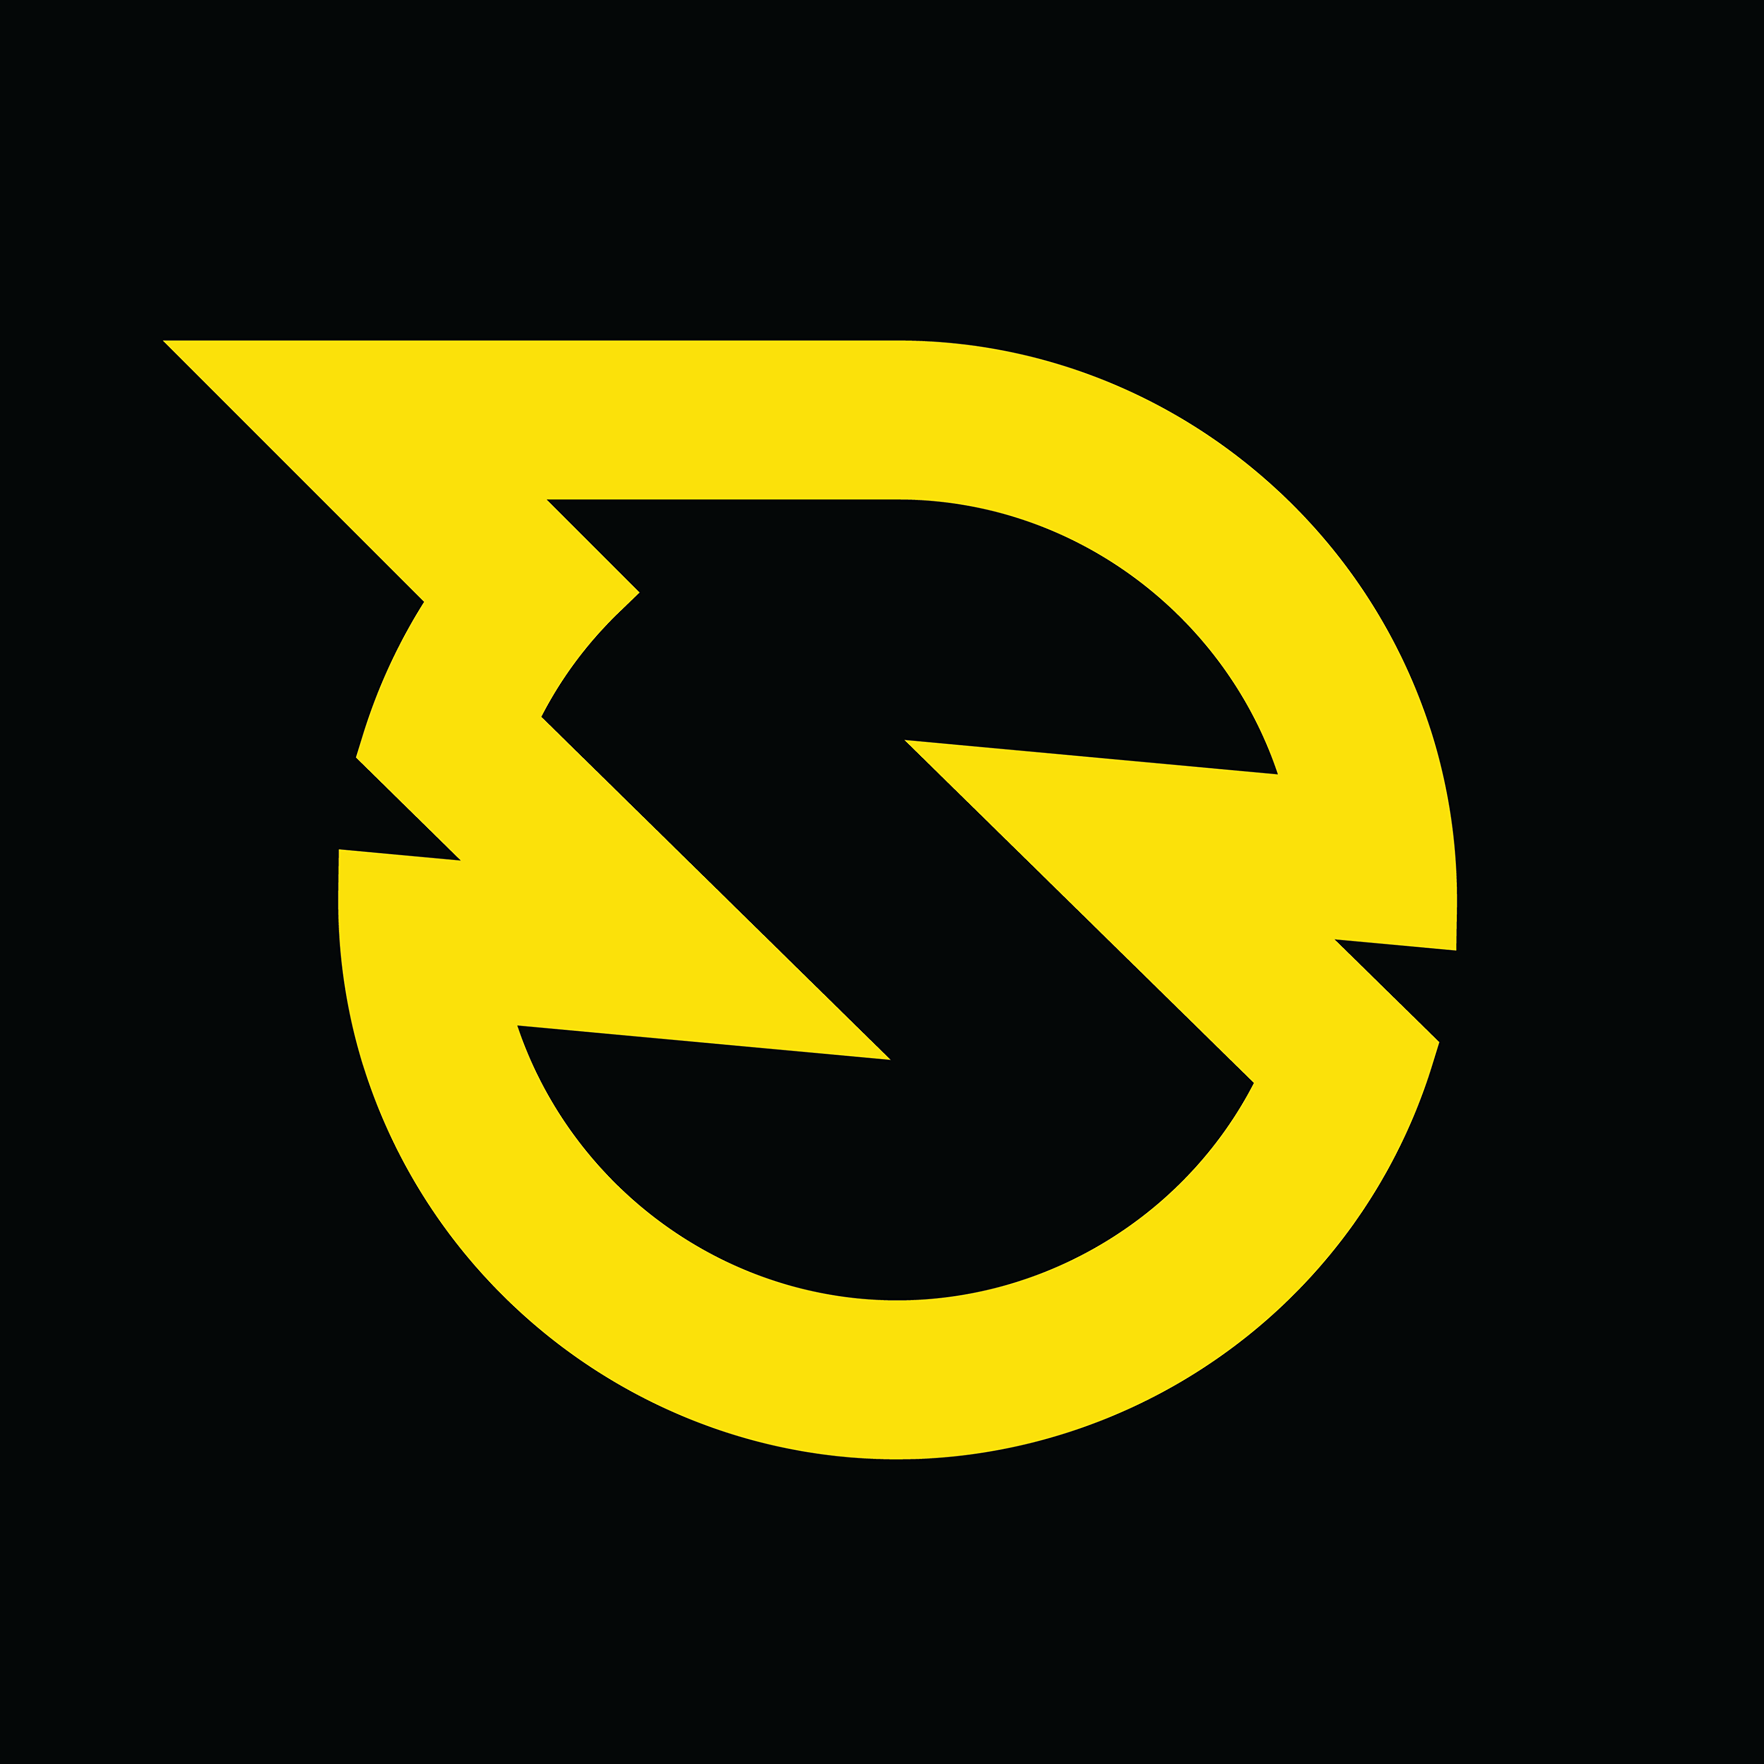 Spikeball logo